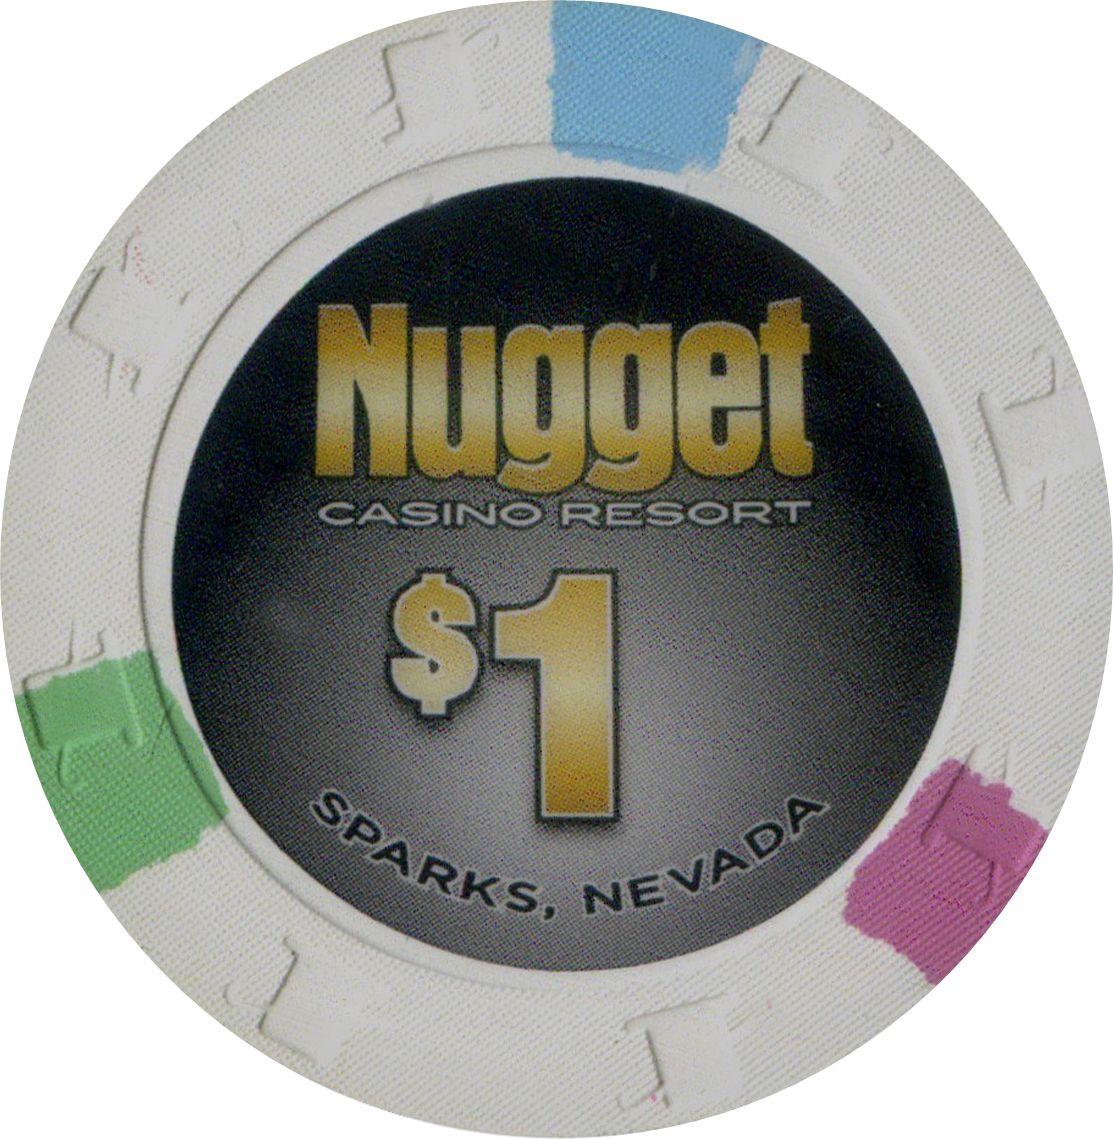 the nugget casino